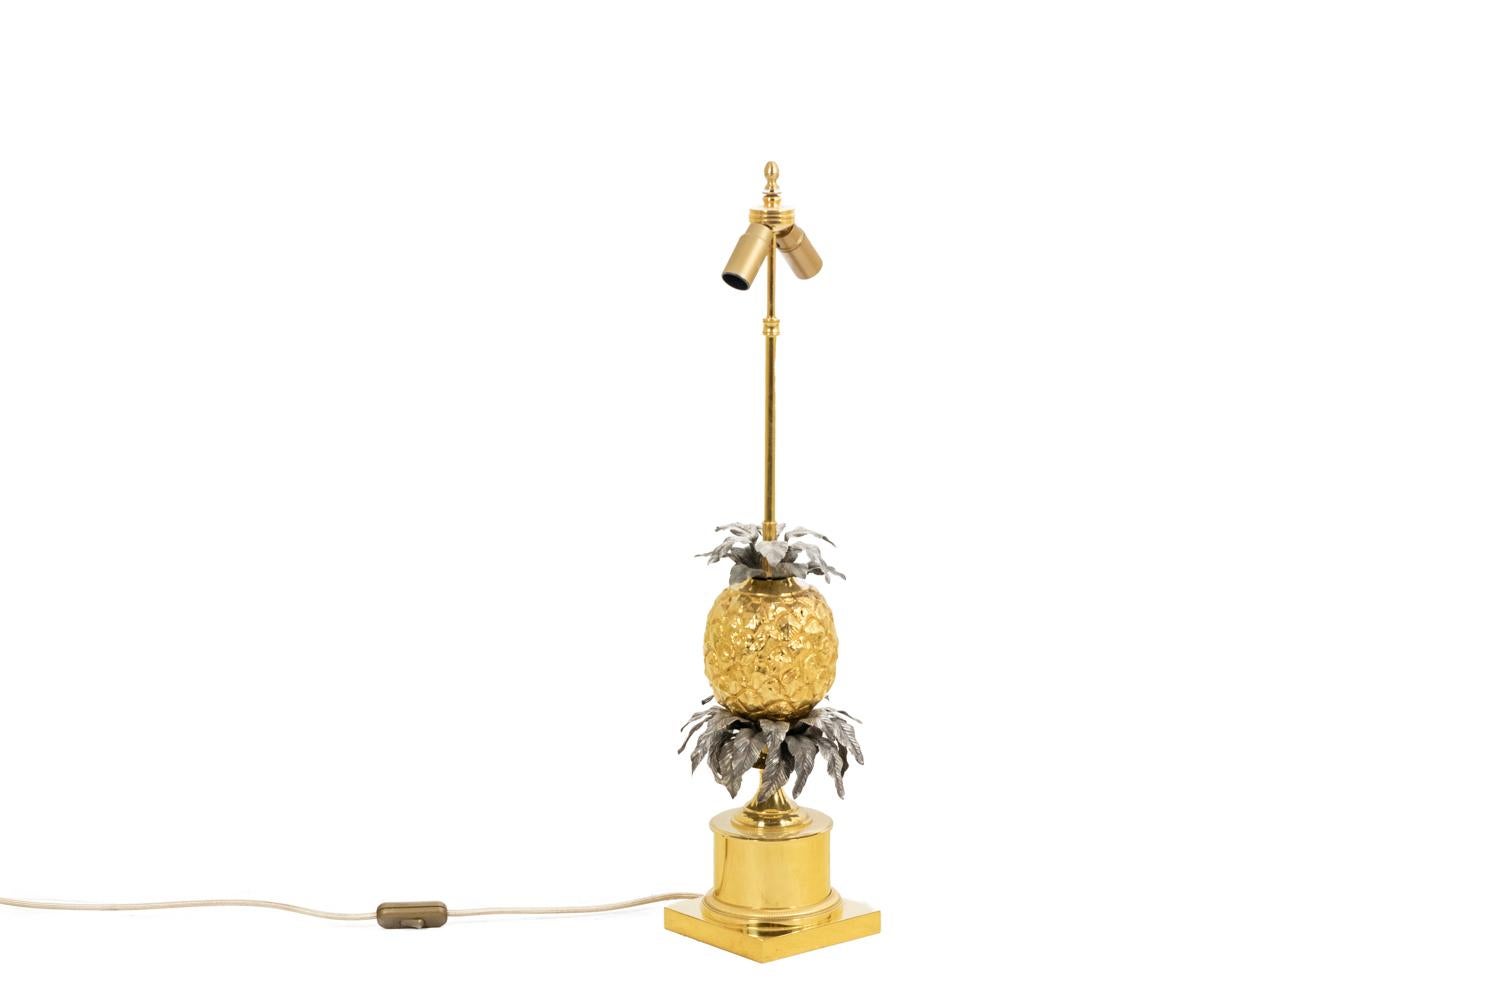 Maison Charles, von.

Große Lampe, die eine stilisierte Ananas aus vergoldeter Bronze darstellt und von Blättern aus geprägtem und vergoldetem Messing gekrönt wird. Unter der Ananas wird der Baum durch eine wichtige dreifache Blattkrone aus